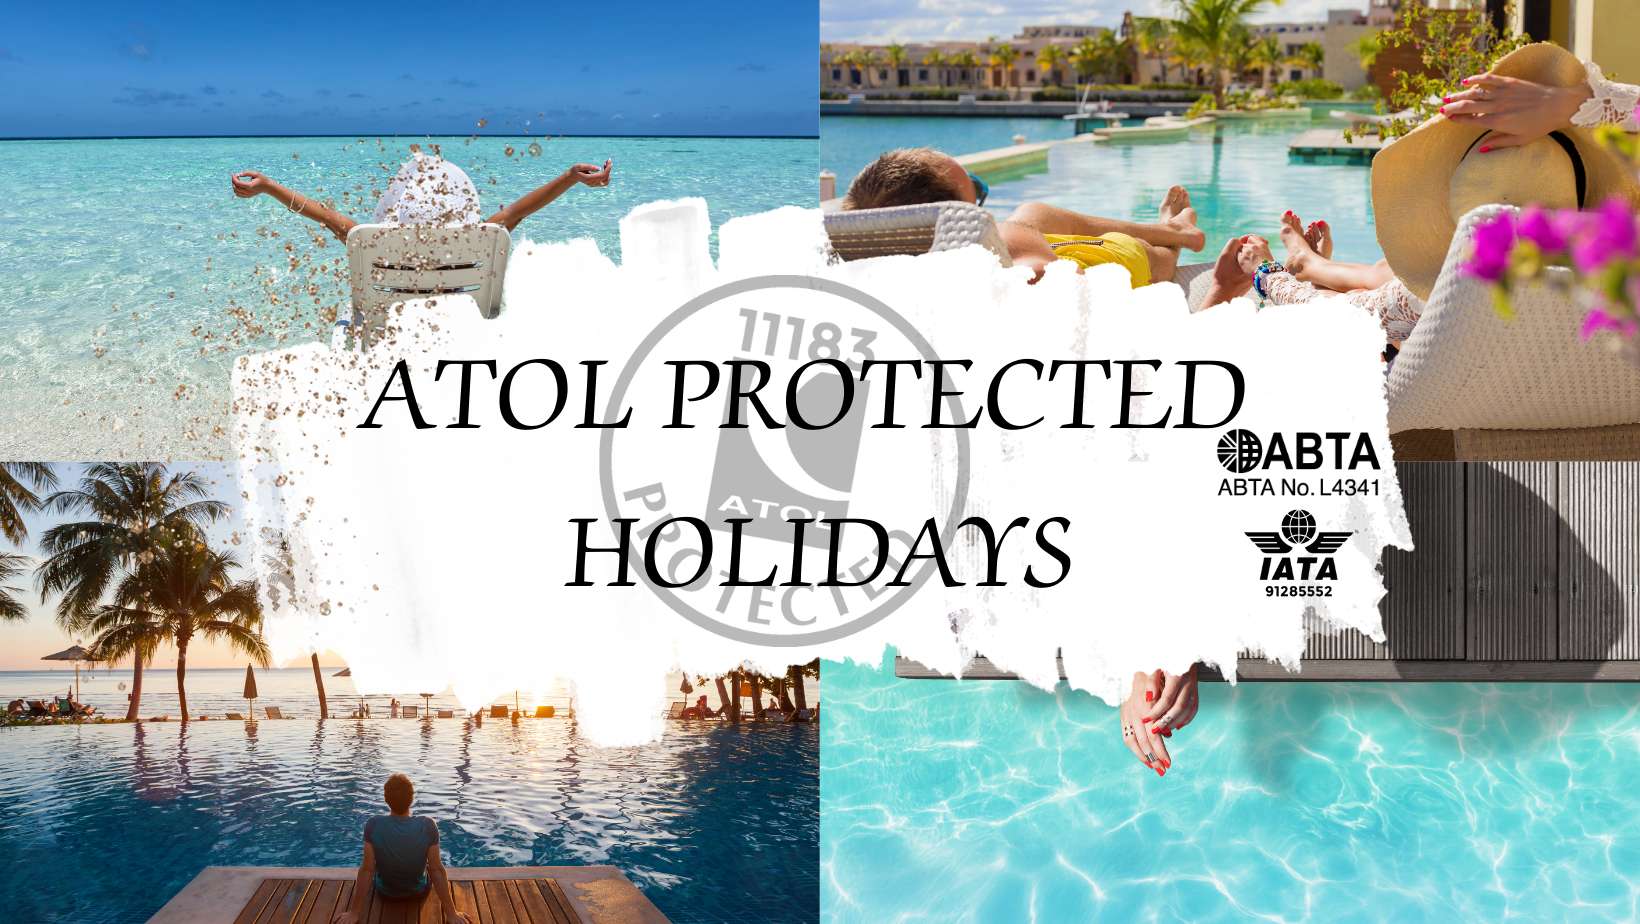 ATOL Protected Holidays